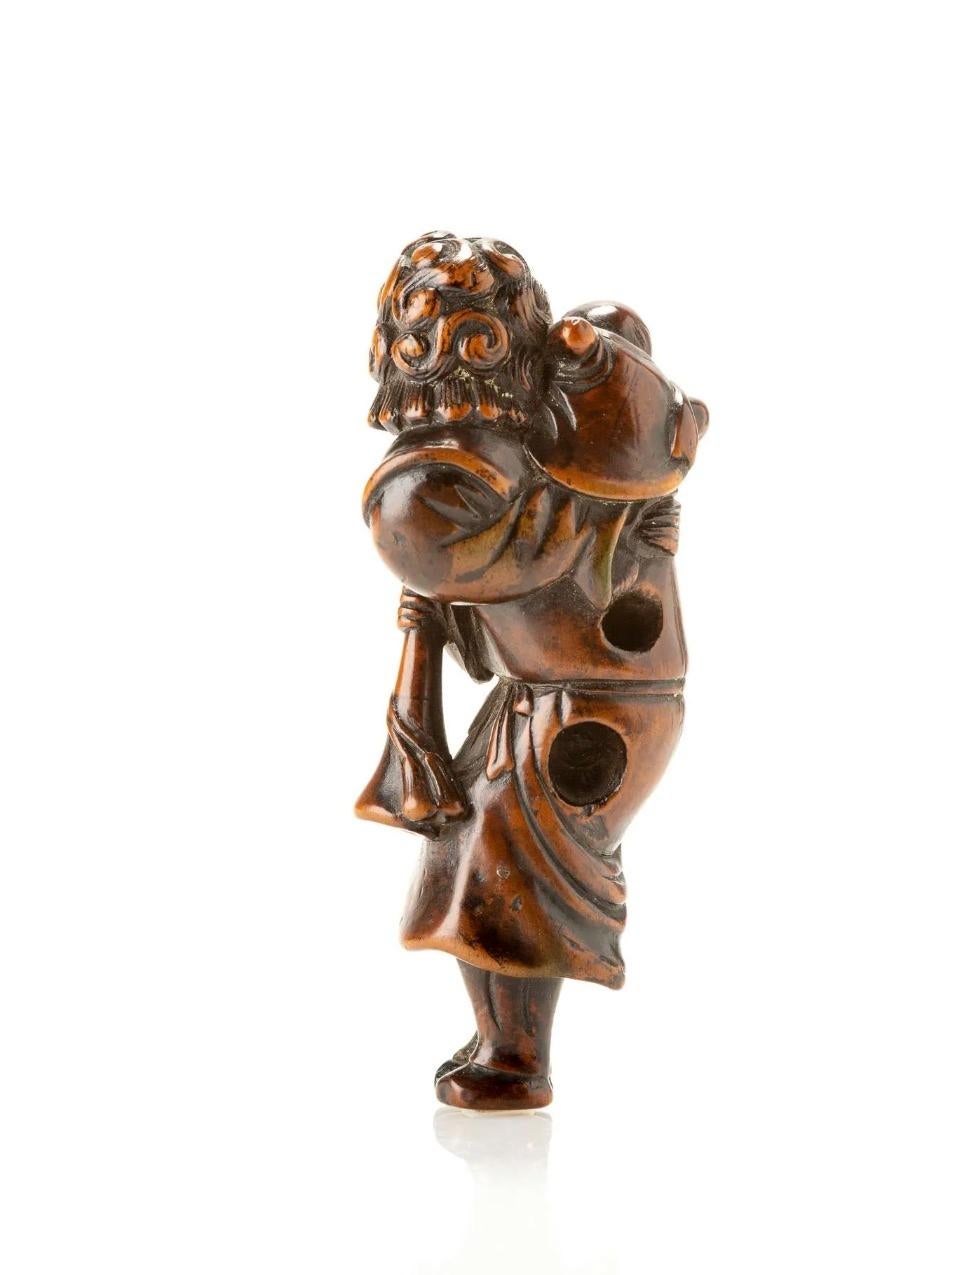 Buchsbaum-Netsuke mit der Darstellung eines Holländers mit einem Kind auf der Schulter und einer Trompete.

Ausgezeichnete blonde Patina auf der Vorderseite im Kontrast zu dem dunkleren Teil auf der Rückseite.

Große Himotoshi-Löcher in der